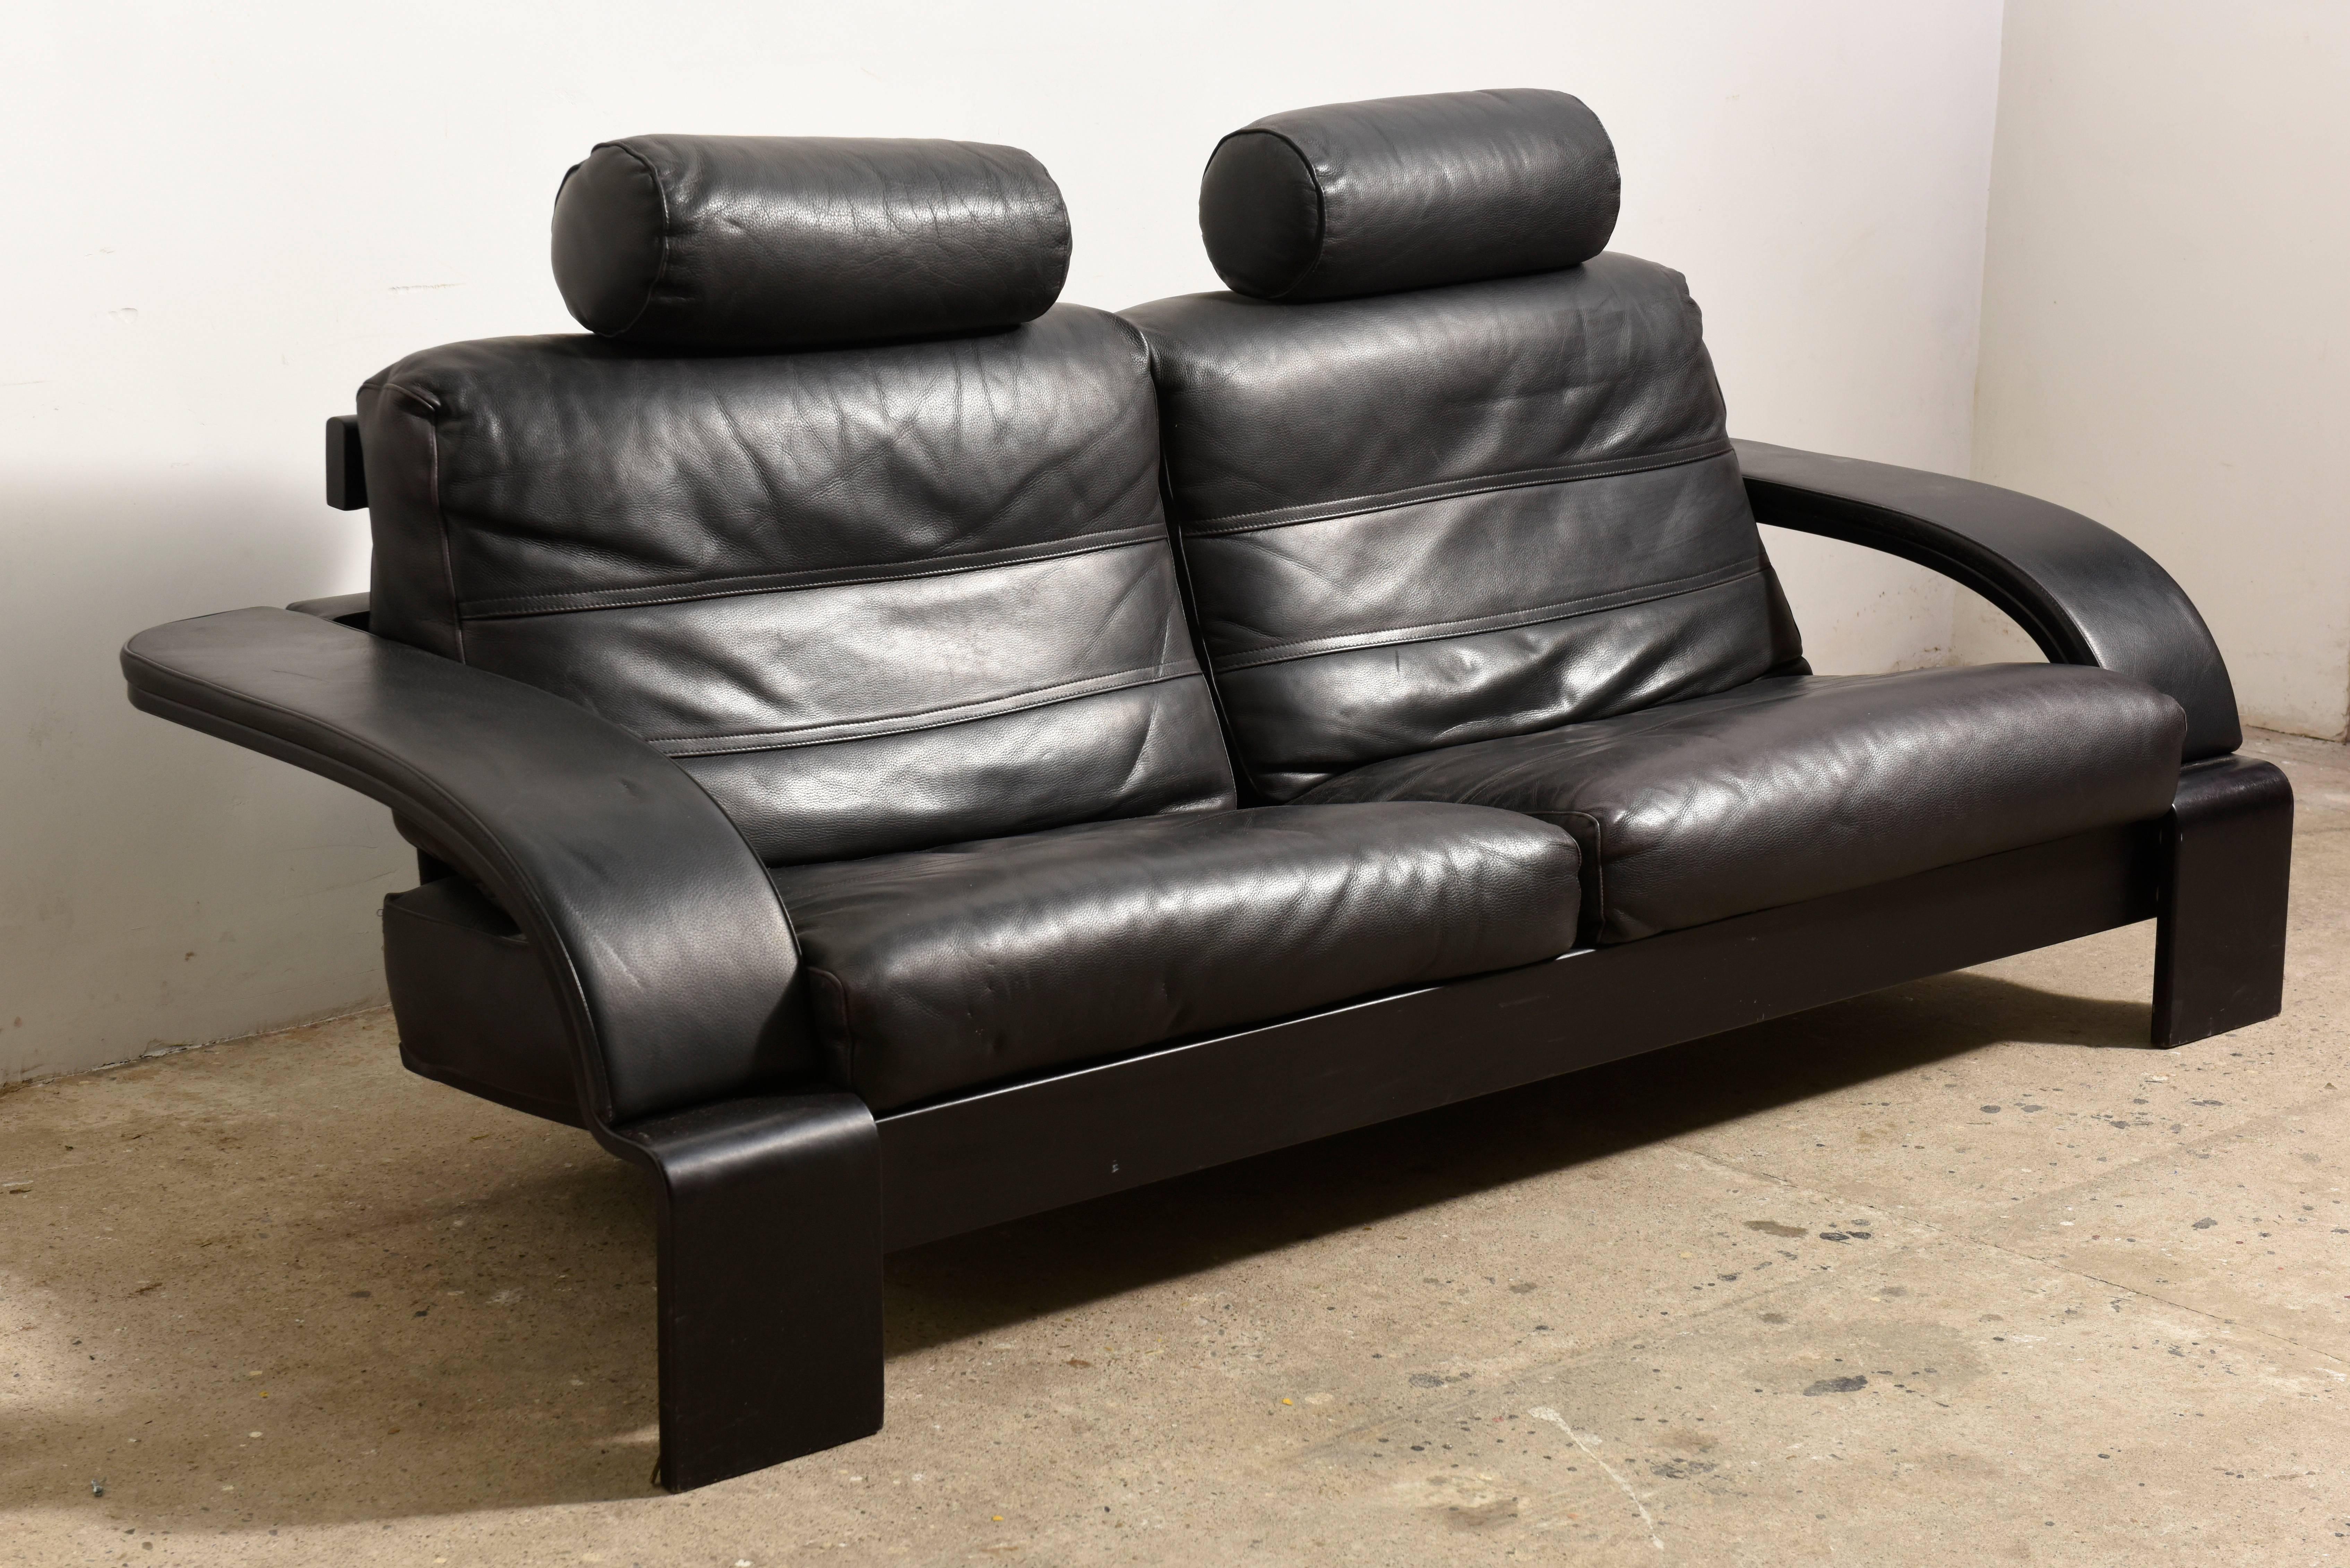 Superbe canapé en cuir noir vintage fabriqué en Italie 1980 Dans un design minimaliste et moderne, avec des fonctions pratiques, faites pour le confort pur et la flexibilité.Le design de la chaise, le dossier et l'accoudoir créent un détail original